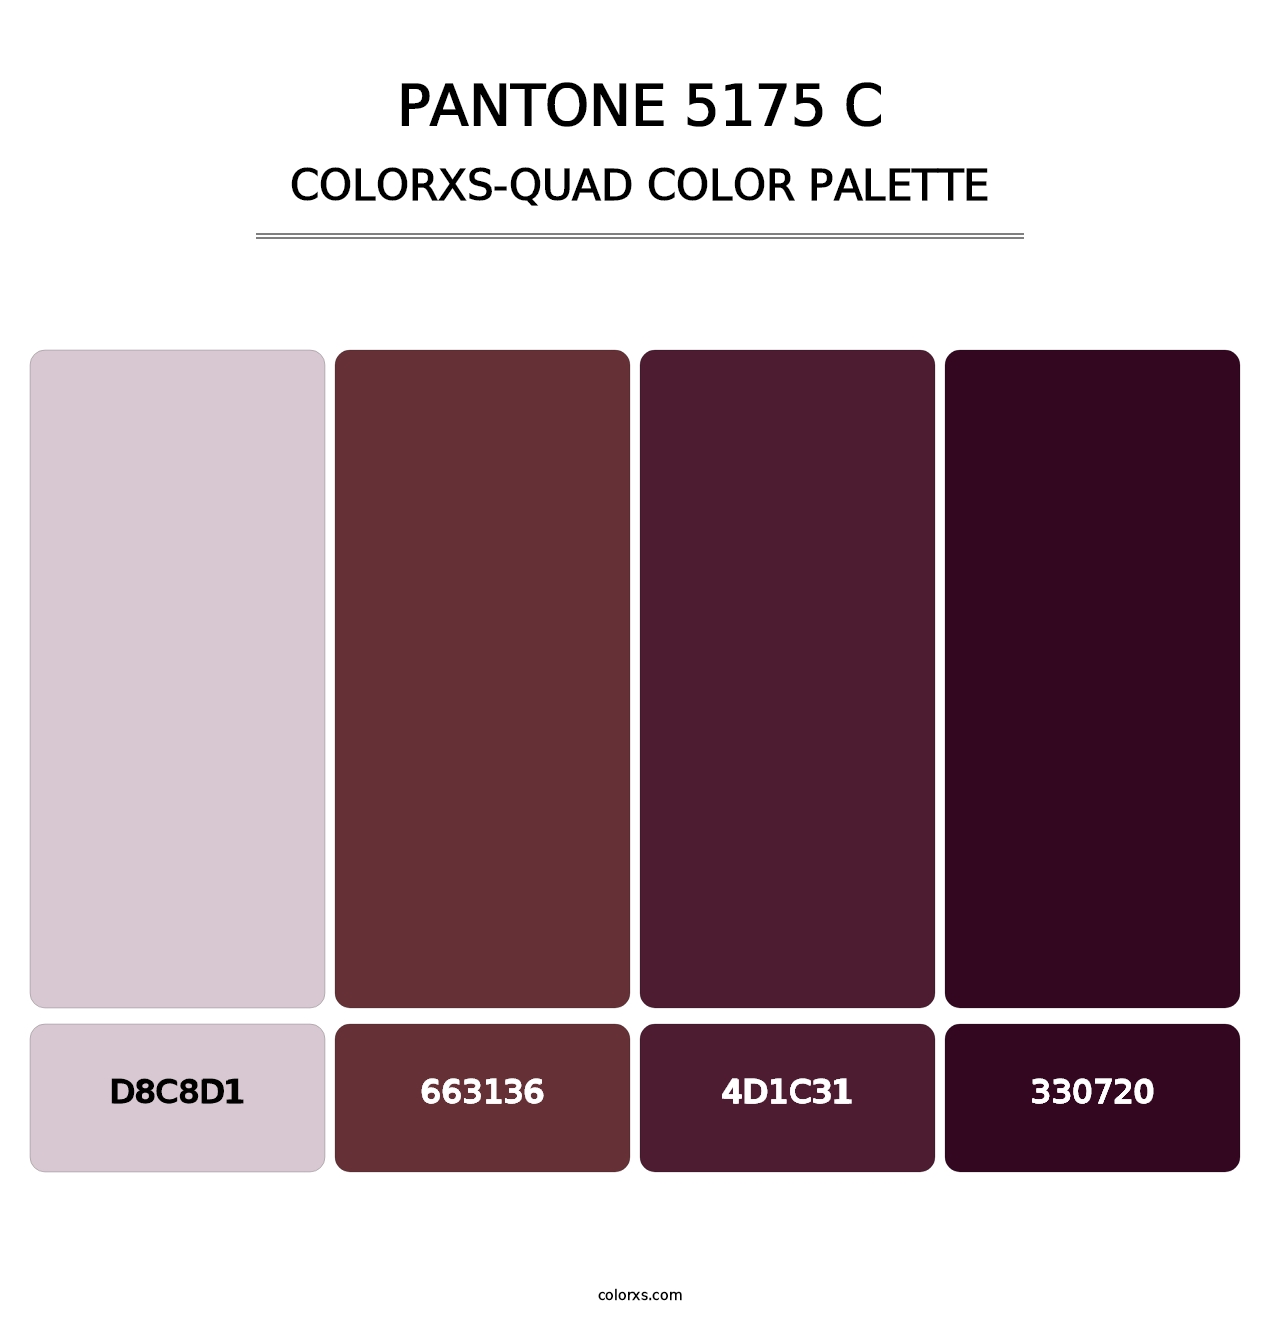 PANTONE 5175 C - Colorxs Quad Palette